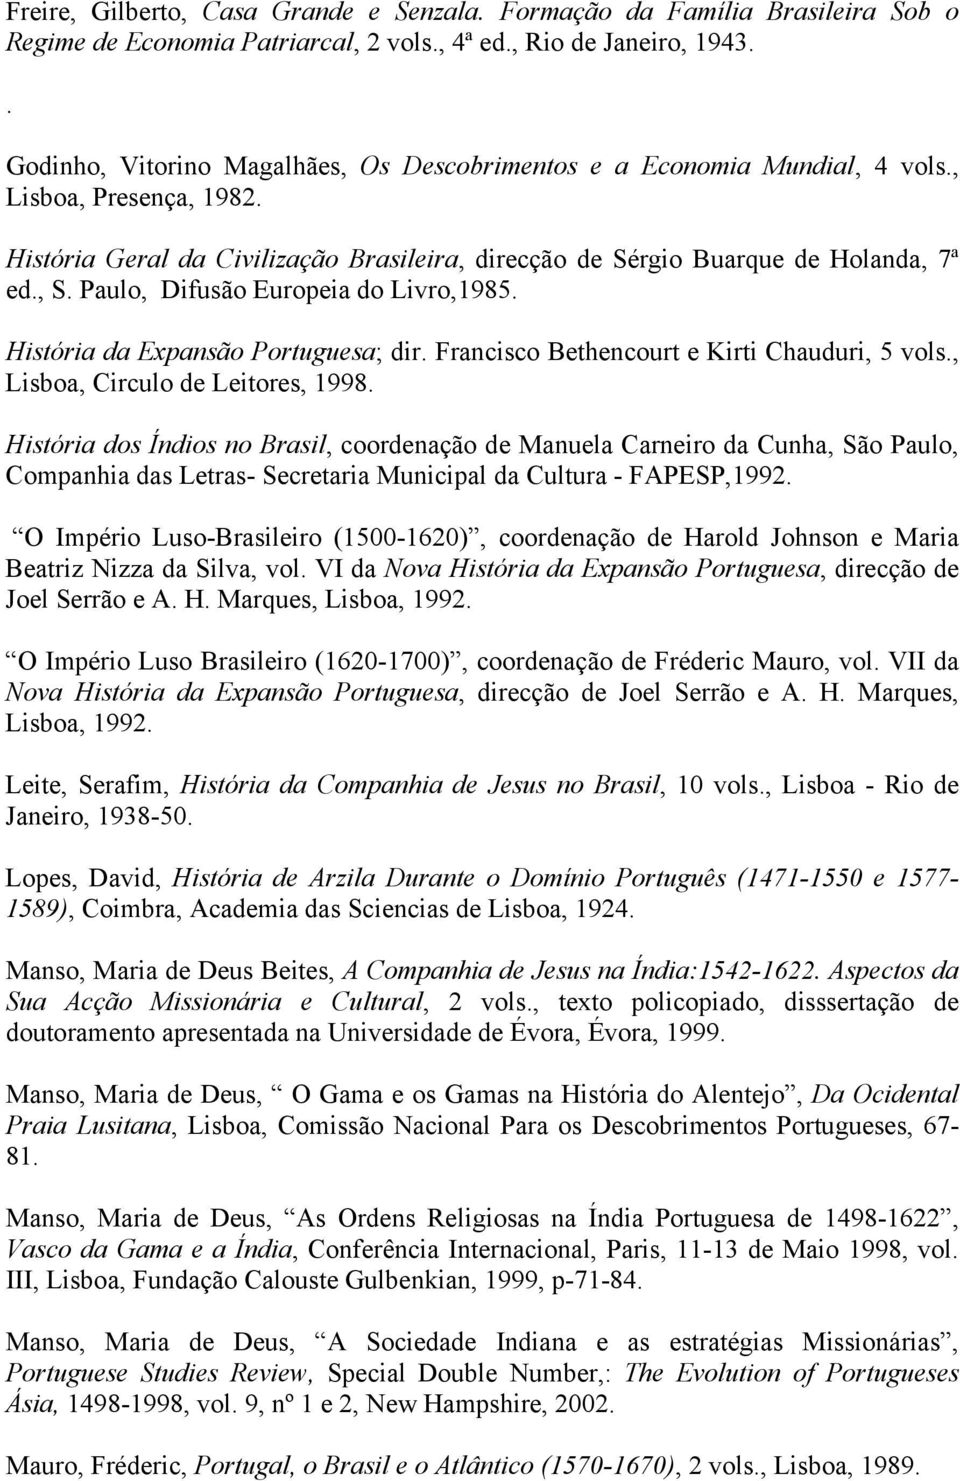 Paulo, Difusão Europeia do Livro,1985. História da Expansão Portuguesa; dir. Francisco Bethencourt e Kirti Chauduri, 5 vols., Lisboa, Circulo de Leitores, 1998.